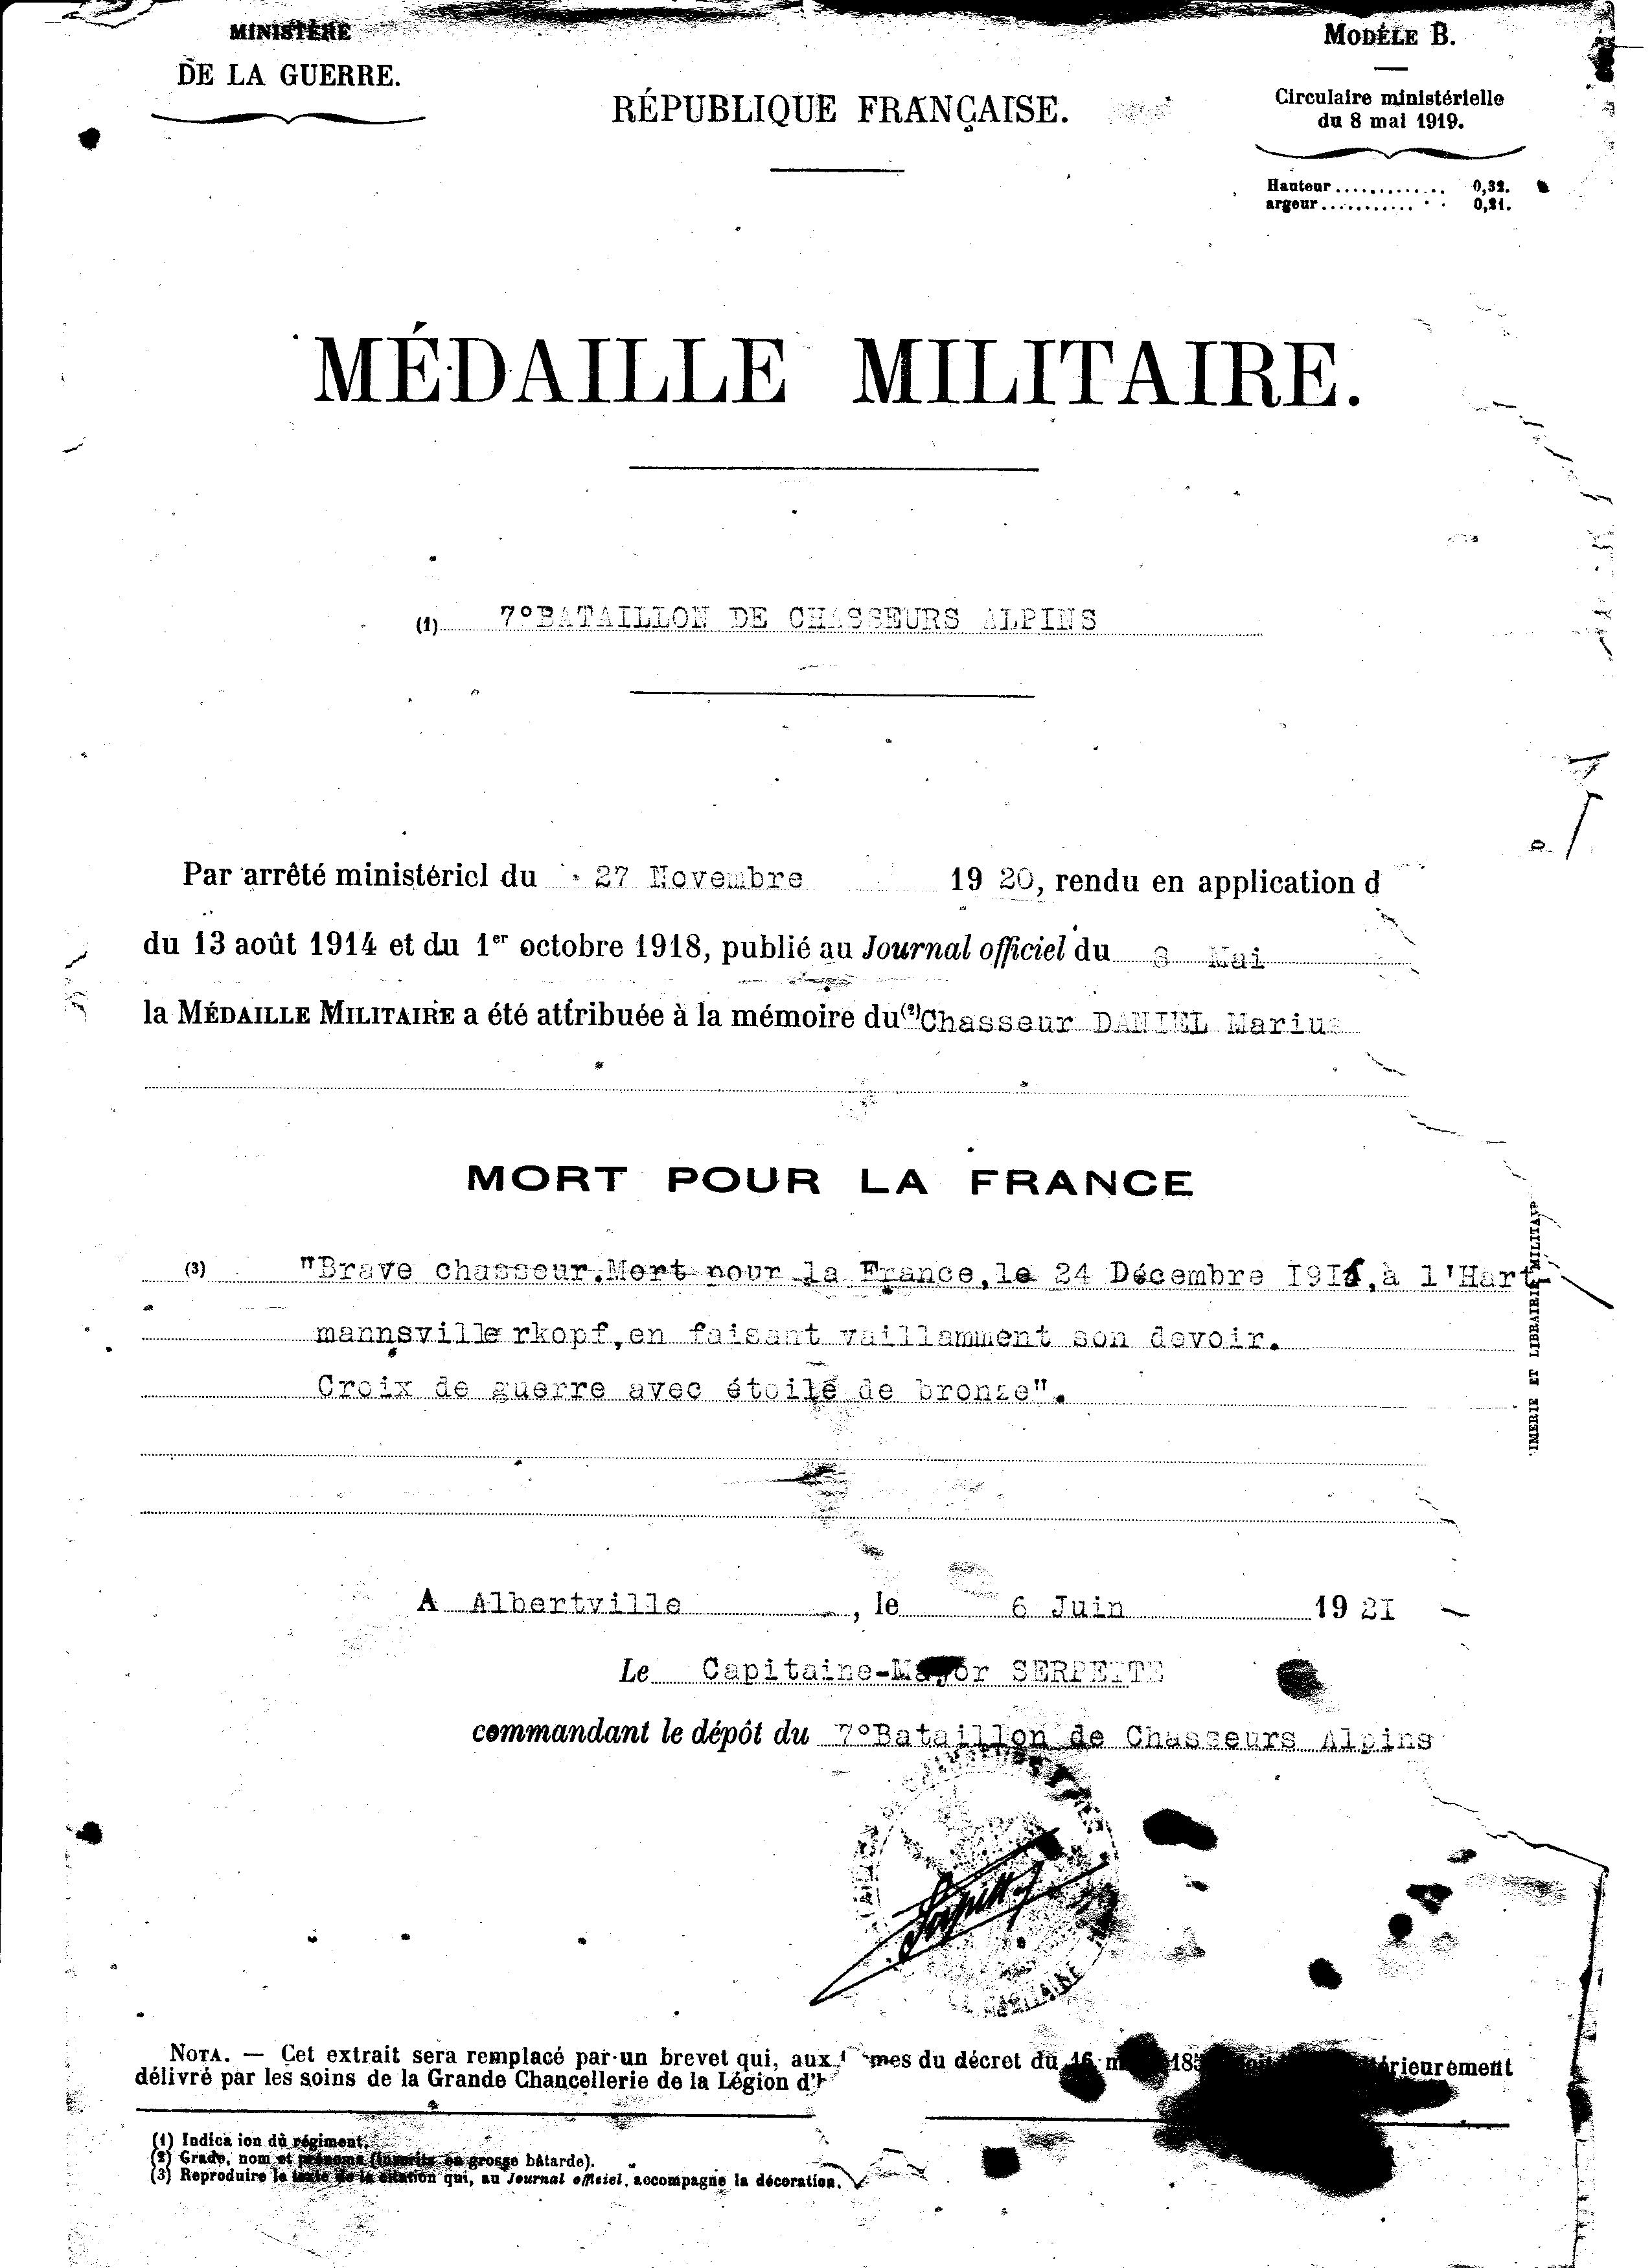 7 DANIEL Marius document militaire citation